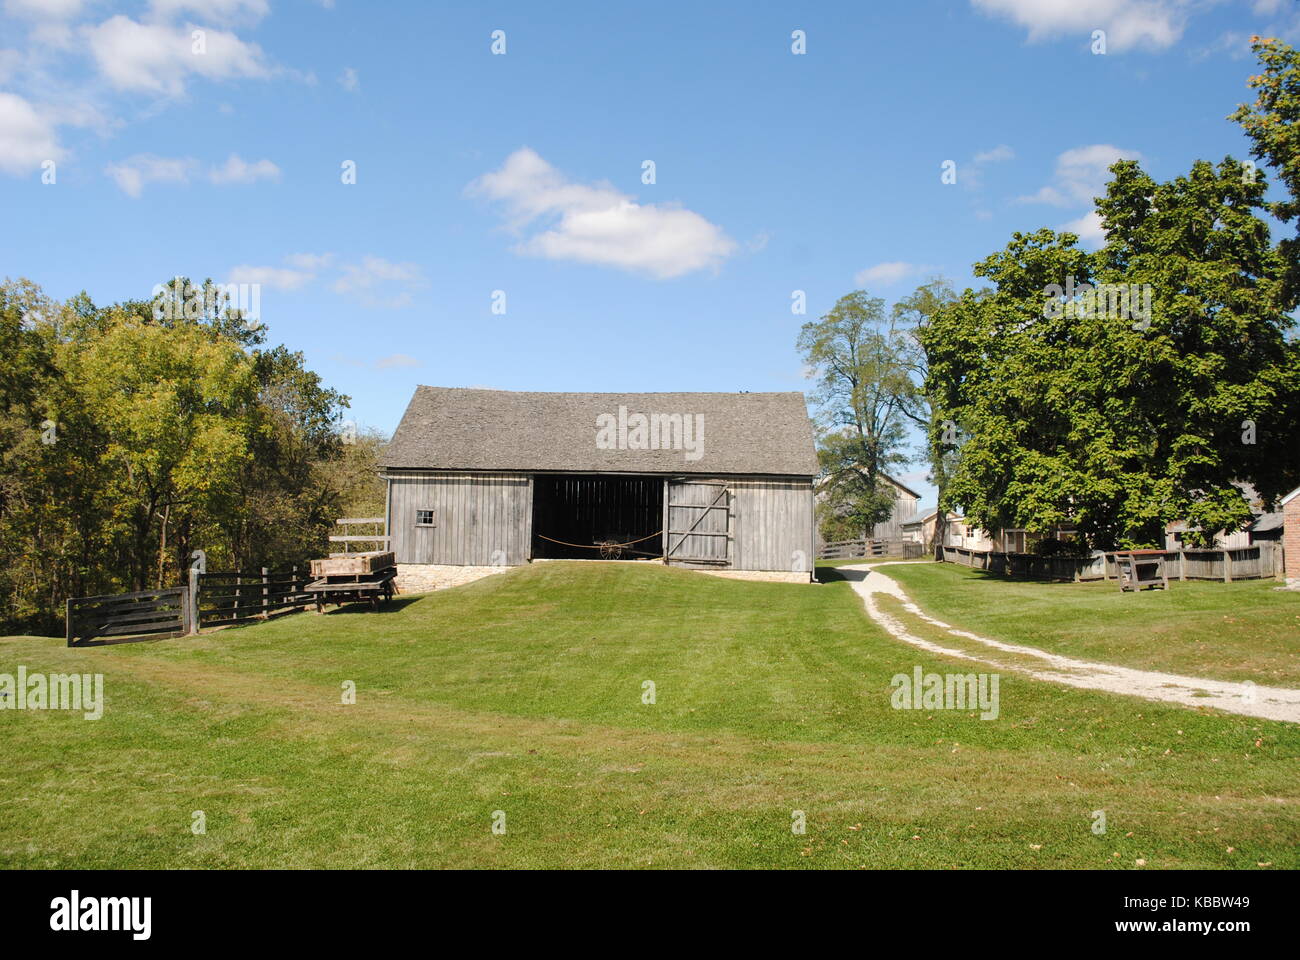 Horse barn with open door Stock Photo